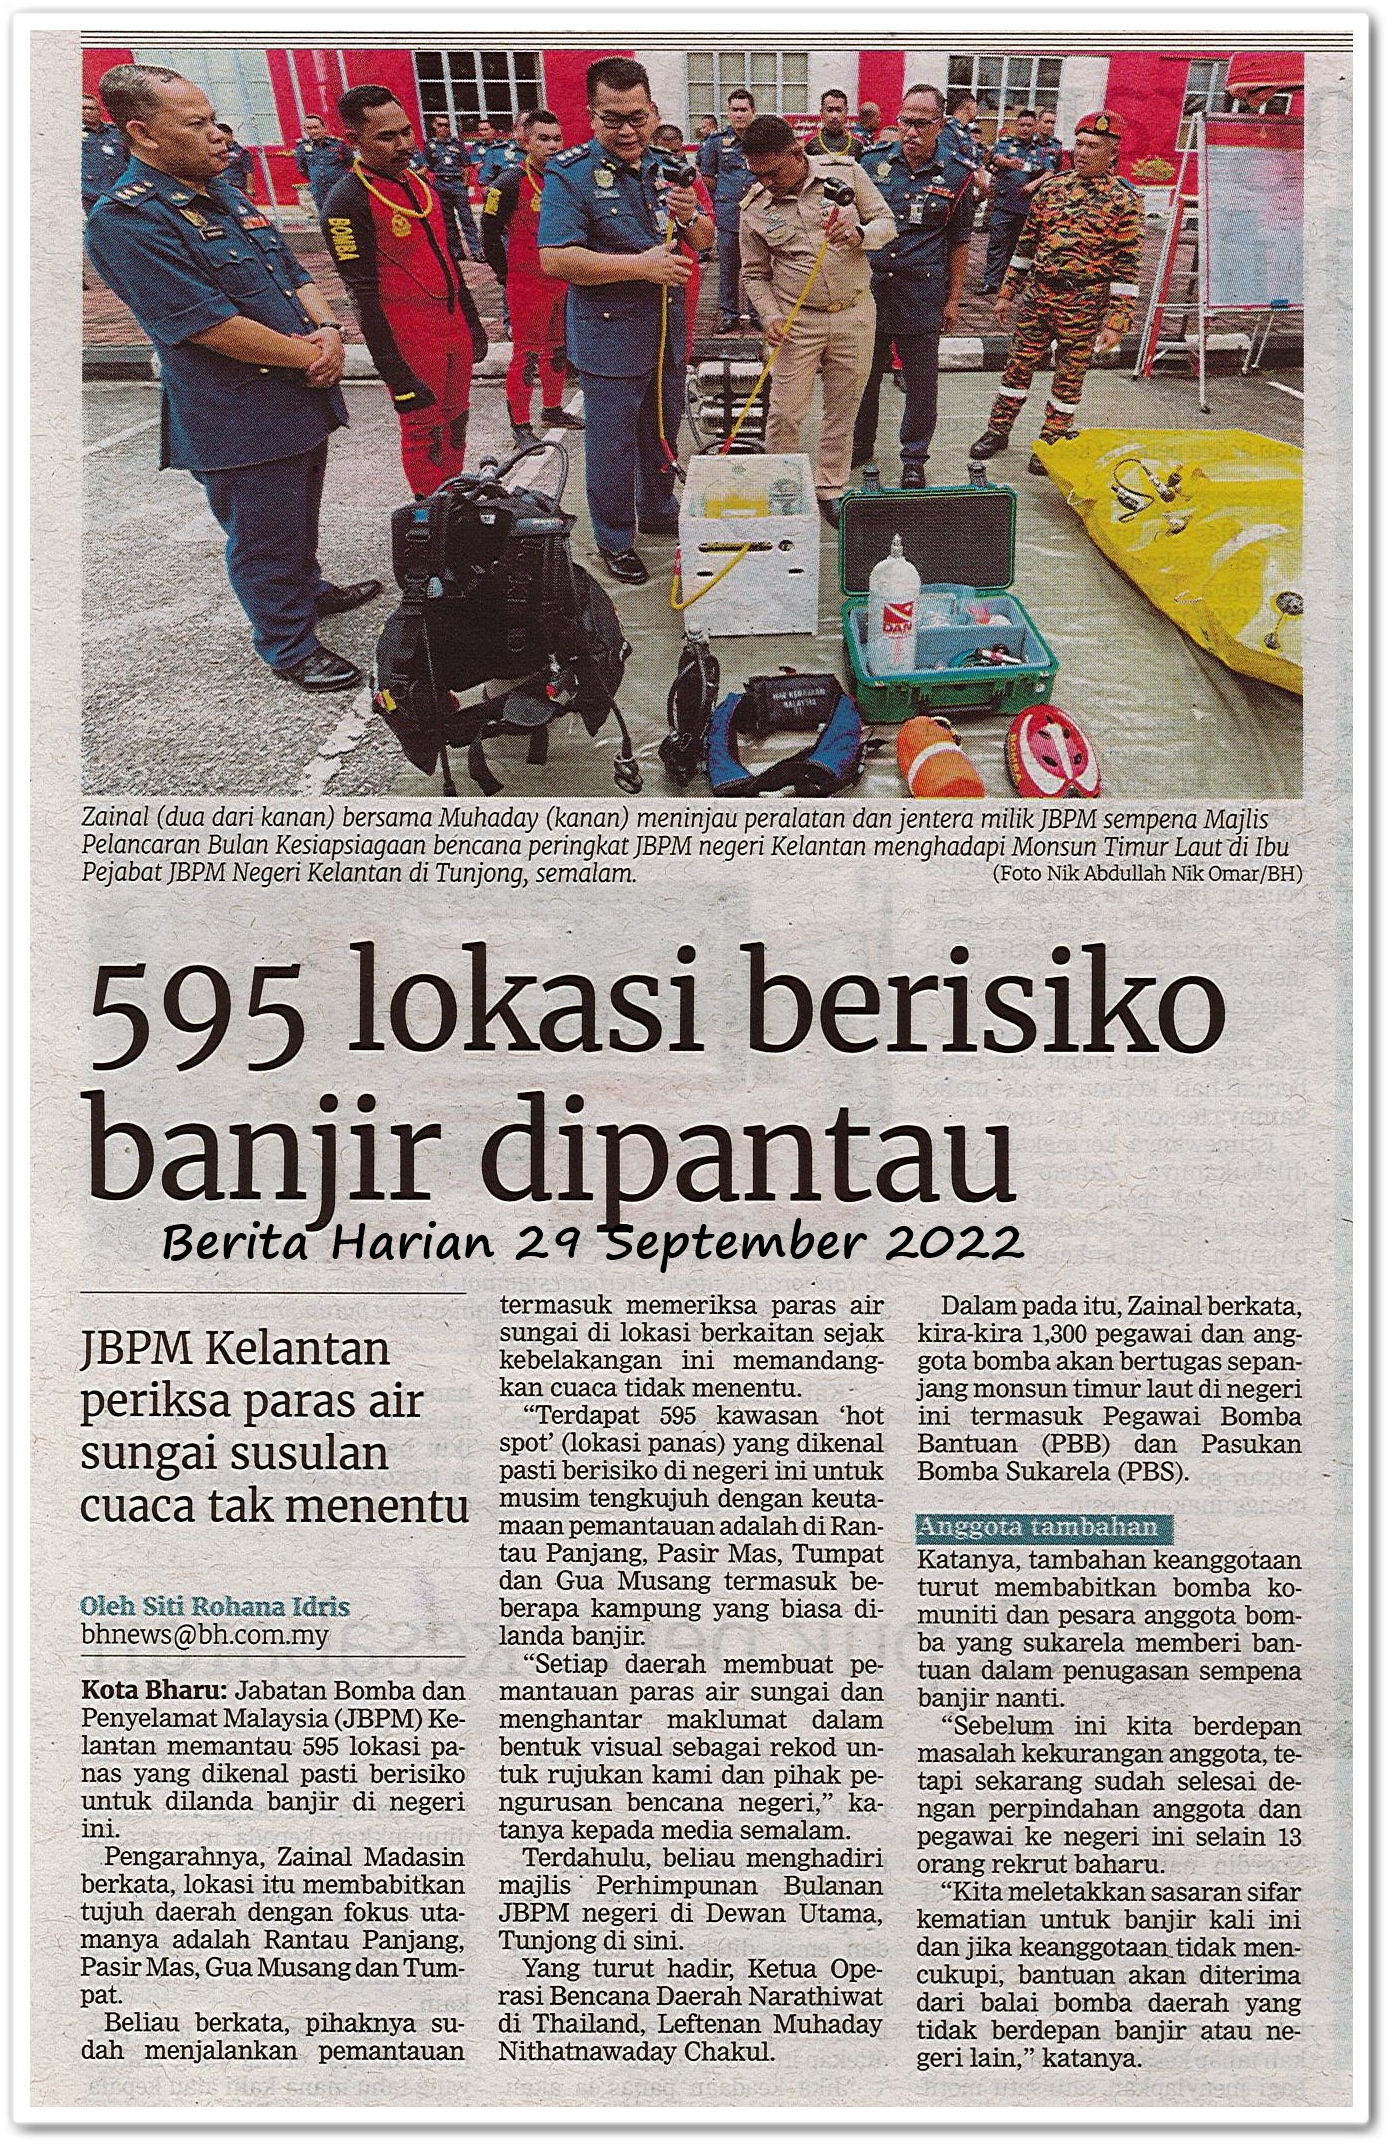 595 lokasi berisiko banjir dipantau ; JBPM Kelantan periksa paras air sungai susulan cuaca tak menentu - Keratan akhbar Berita Harian 29 September 2022